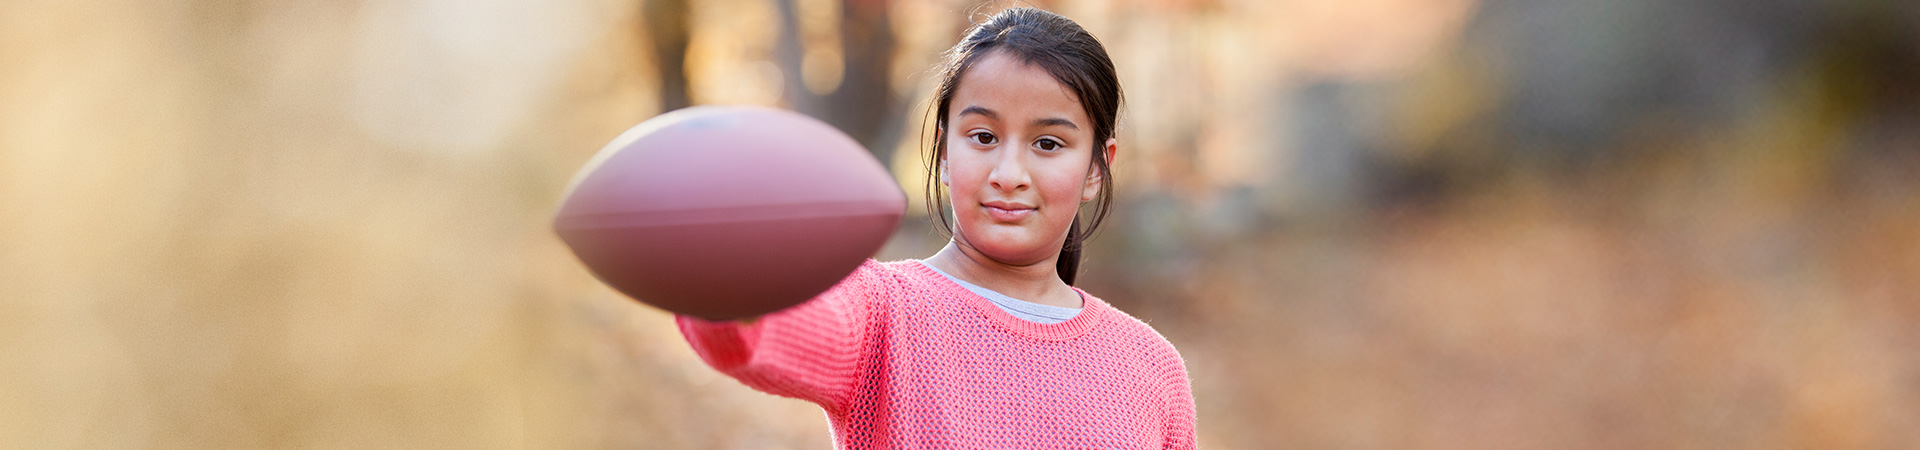  girl holding football looking at camera 